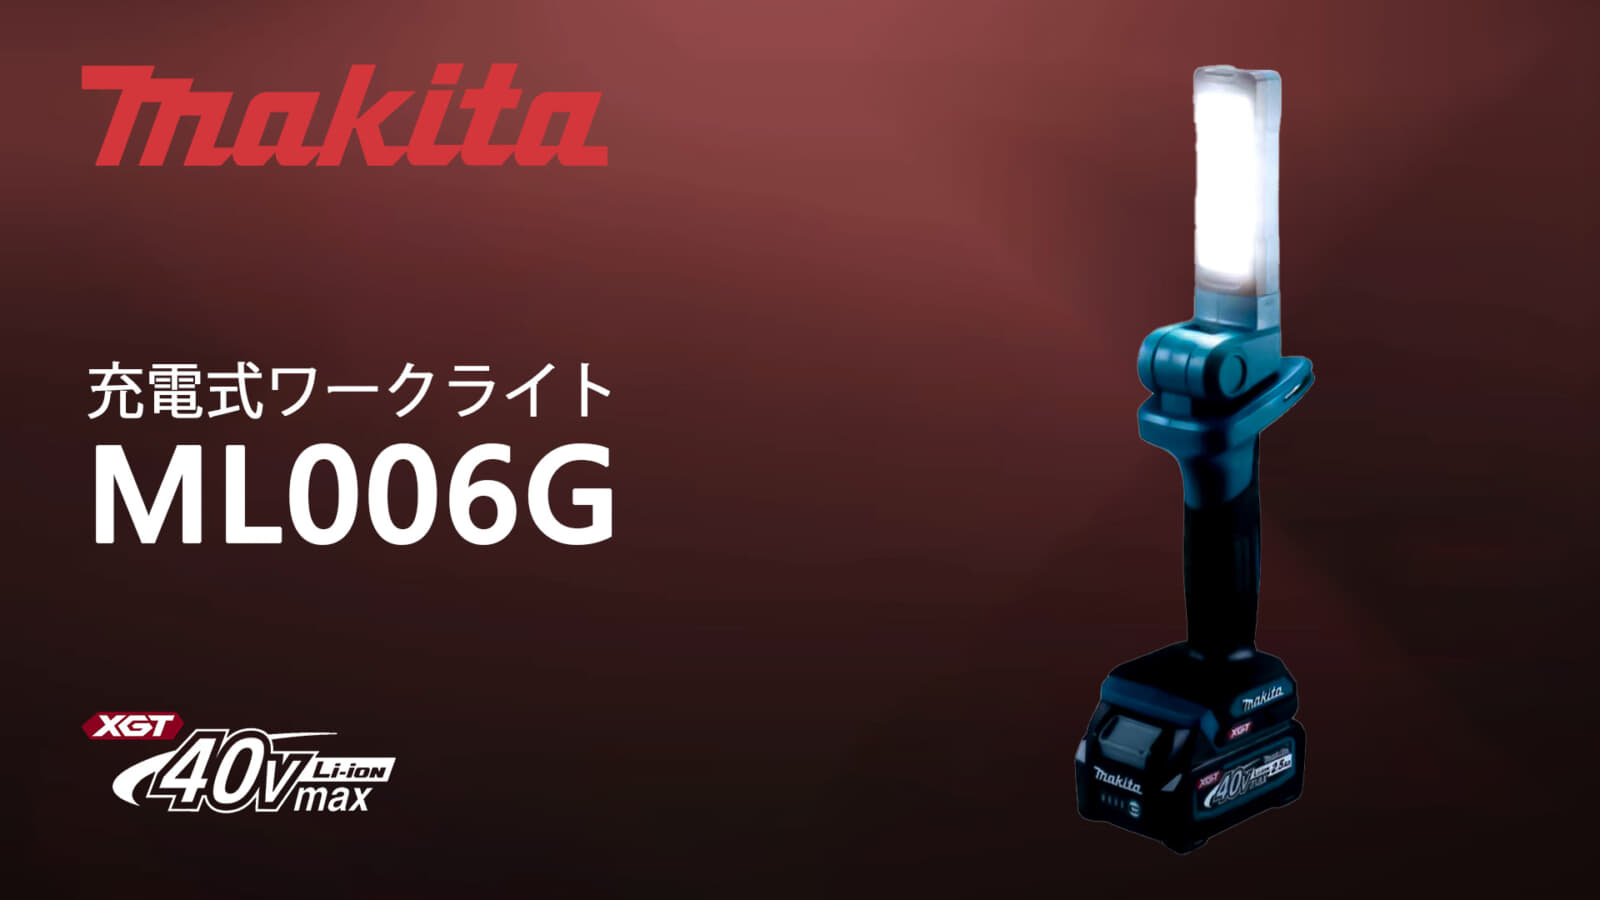 マキタ ML006G 充電式ワークライトを発売、40Vmaxシリーズ対応の500lm 